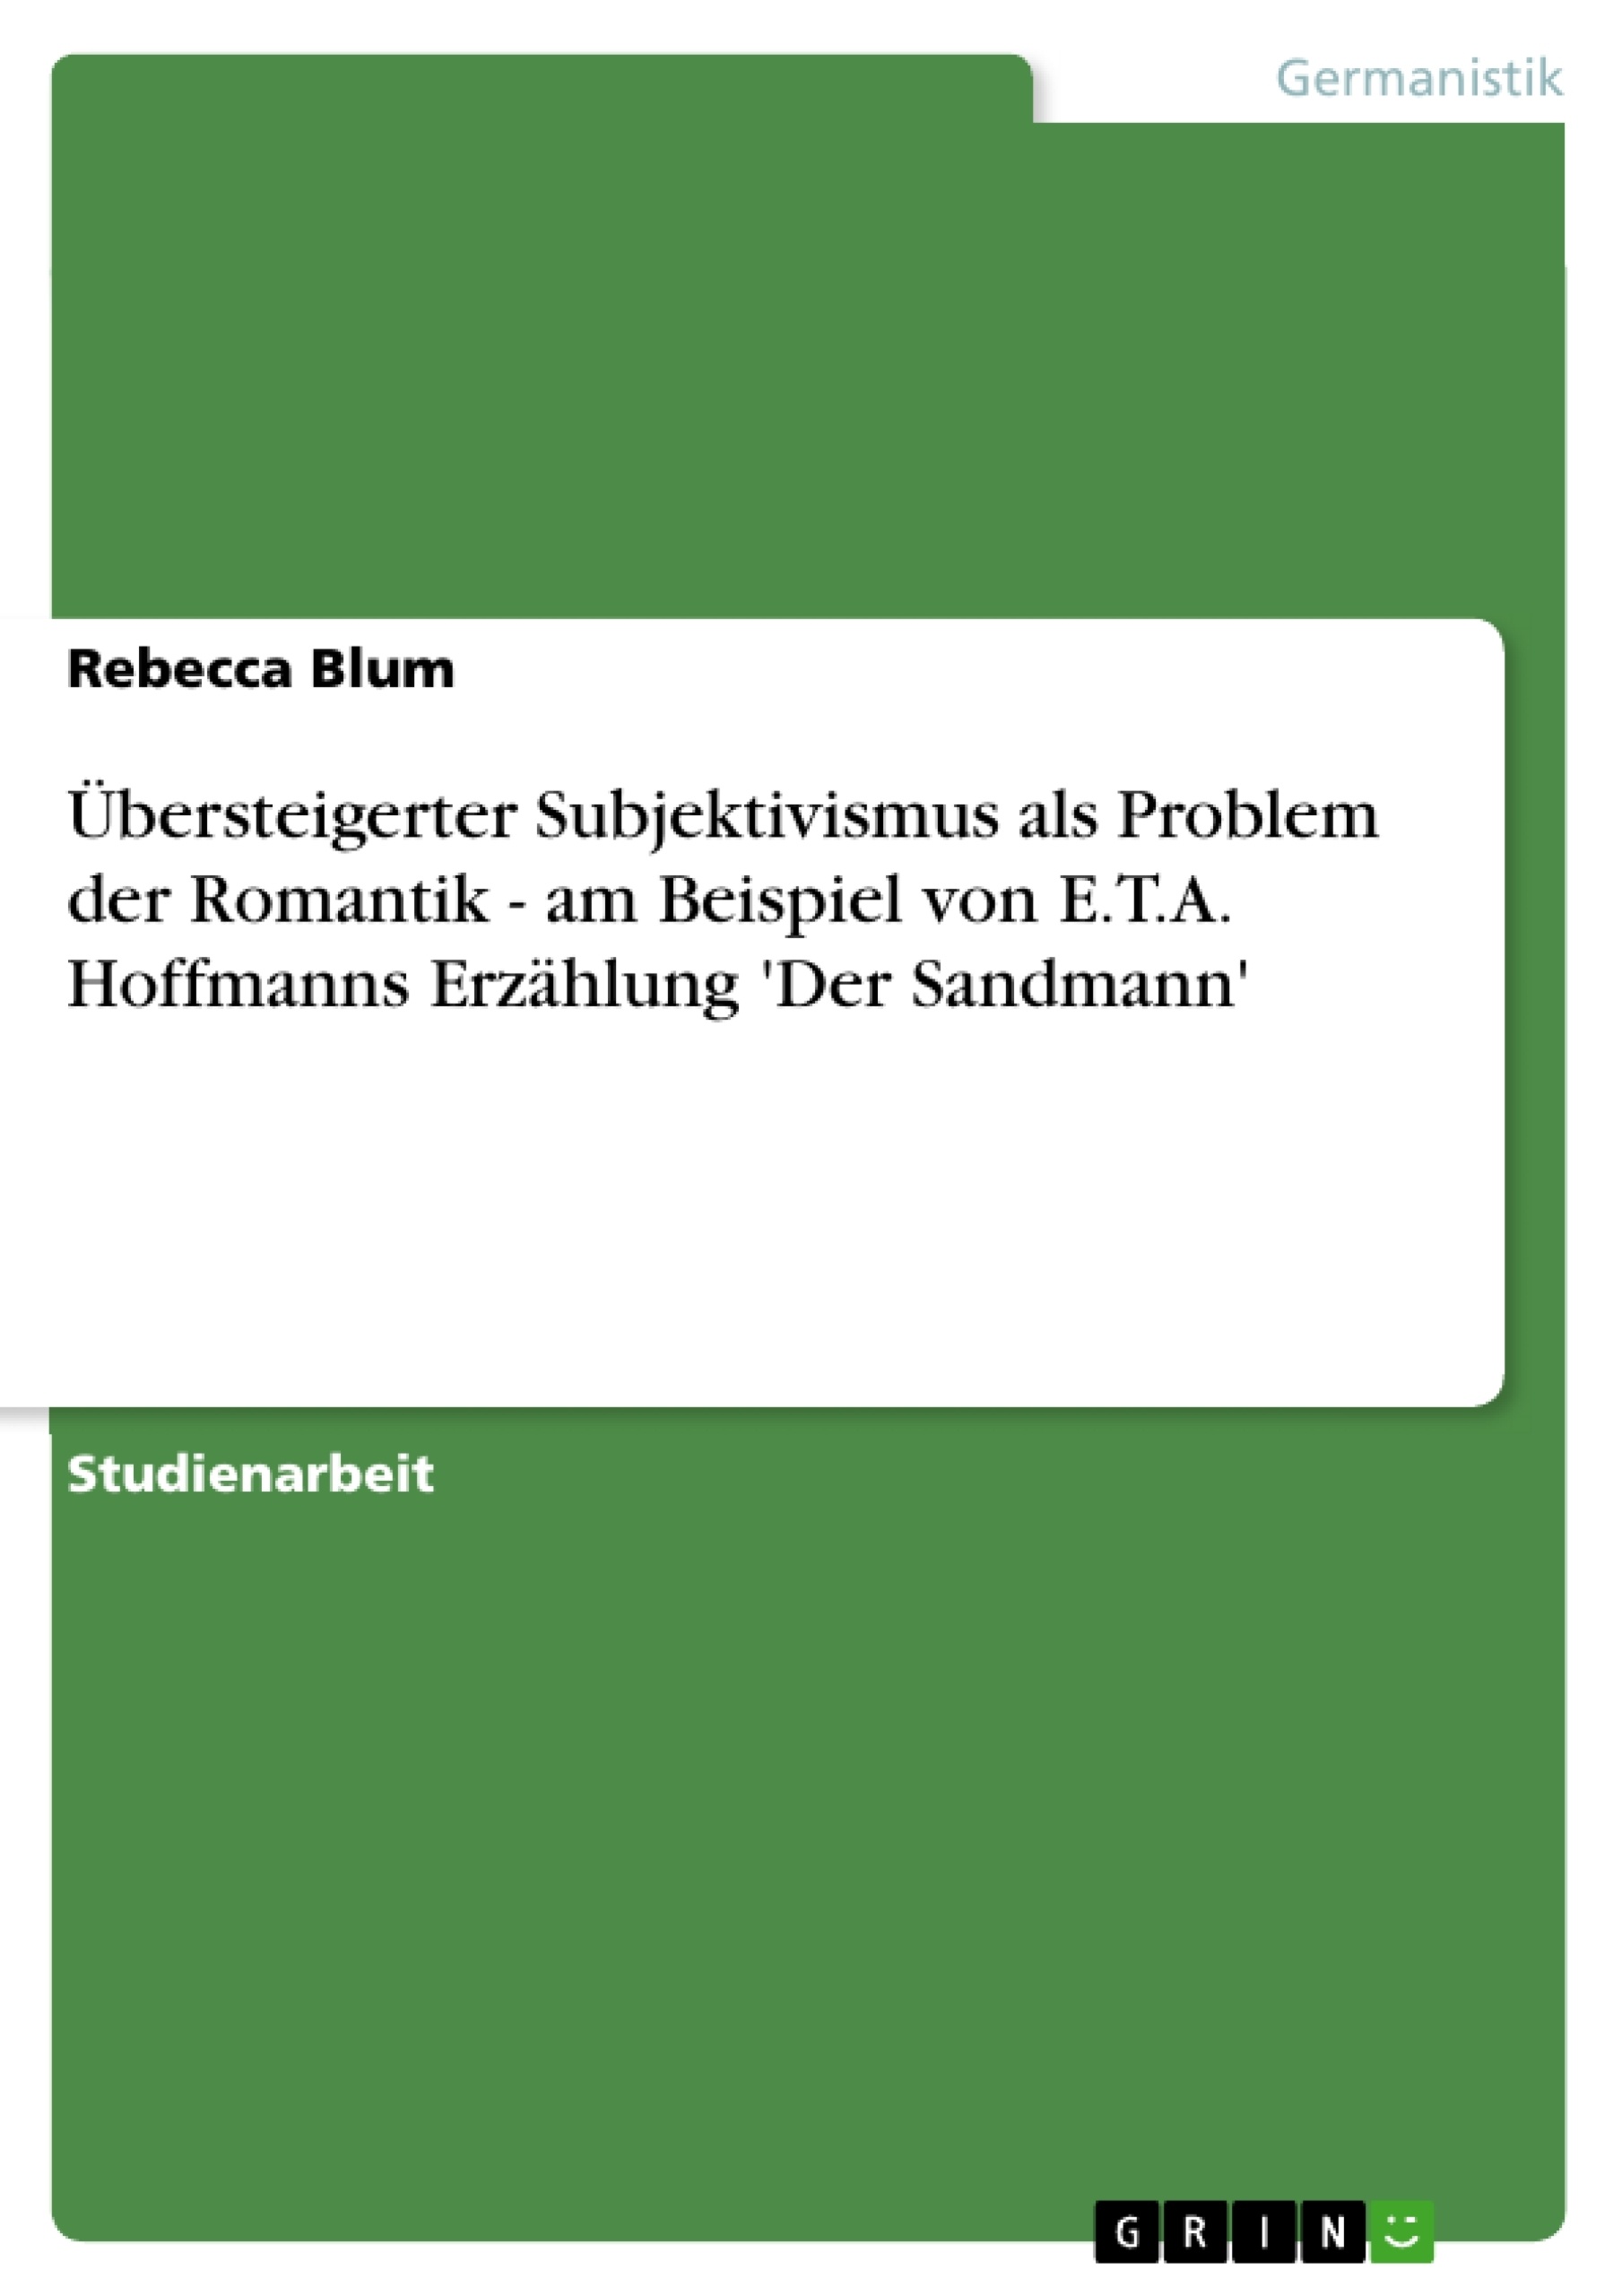 Título: Übersteigerter Subjektivismus als Problem der Romantik - am Beispiel von E.T.A. Hoffmanns Erzählung 'Der Sandmann'